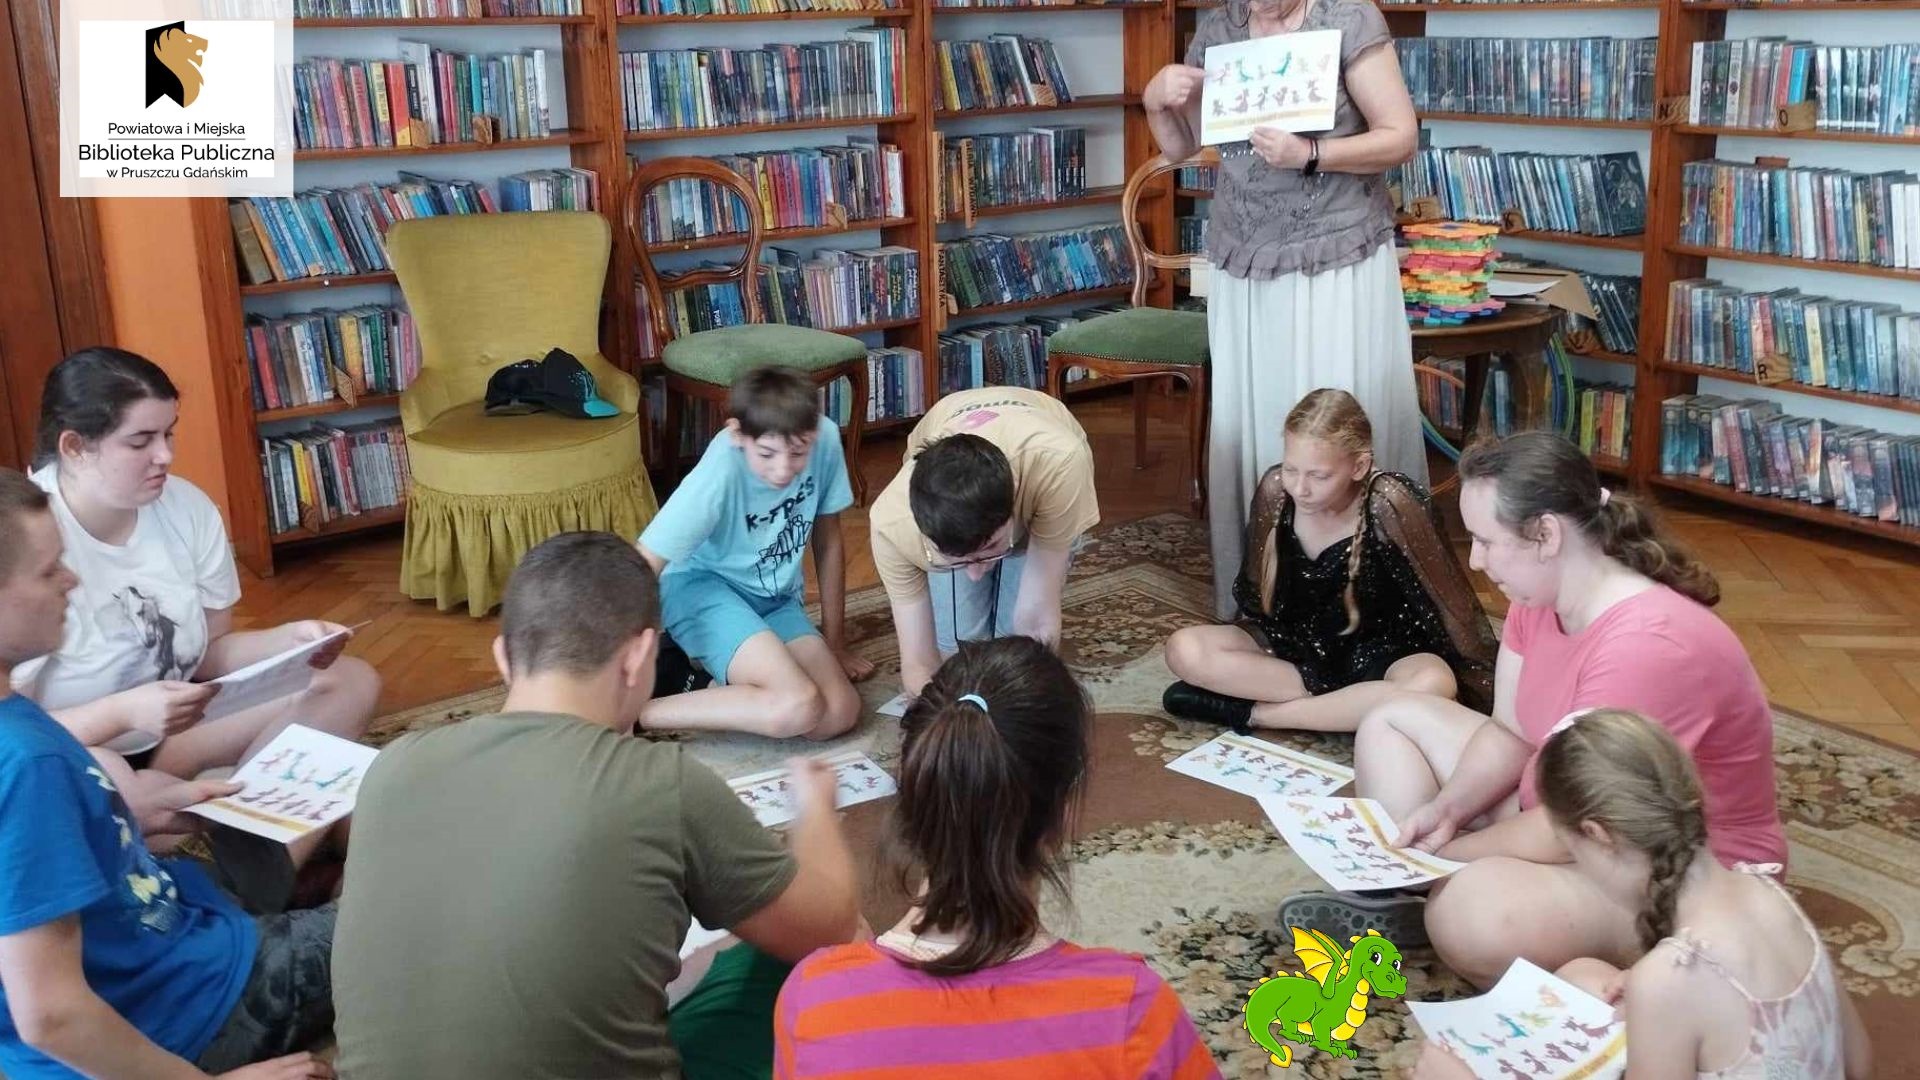 9 nastoletnich dzieci siedzi na dywanie w wypożyczalni dla dzieci. Przed nimi leżą kartki, na których wydrukowane są głowy smoka. Obok nich stoi Anna Krawycińska, prowadząca zajęcia, która trzyma w rękach taką samą kartę i cos objaśnia.